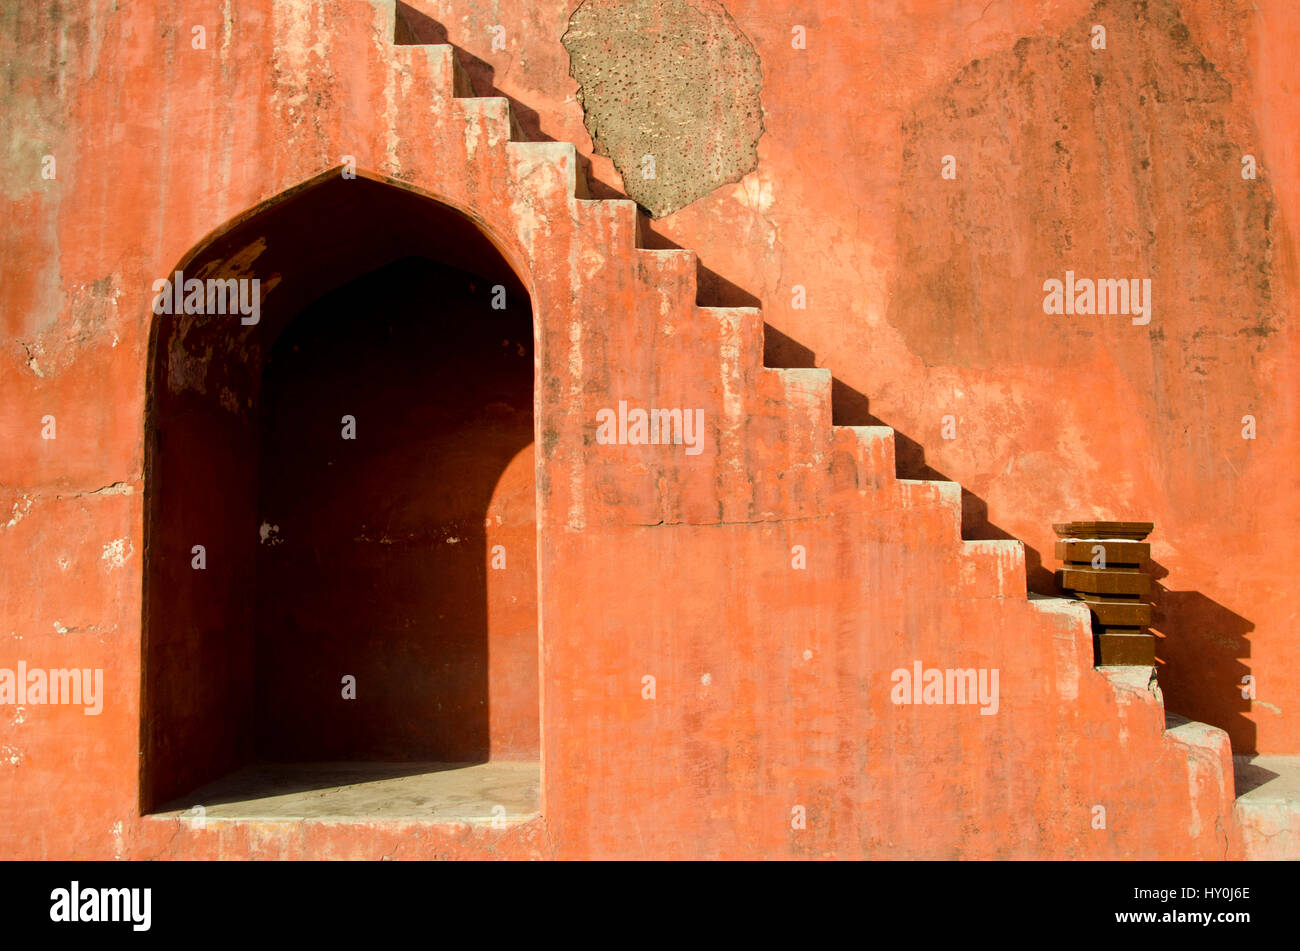 Alcova e passaggi, Jantar Mantar, Delhi, India, Asia Foto Stock